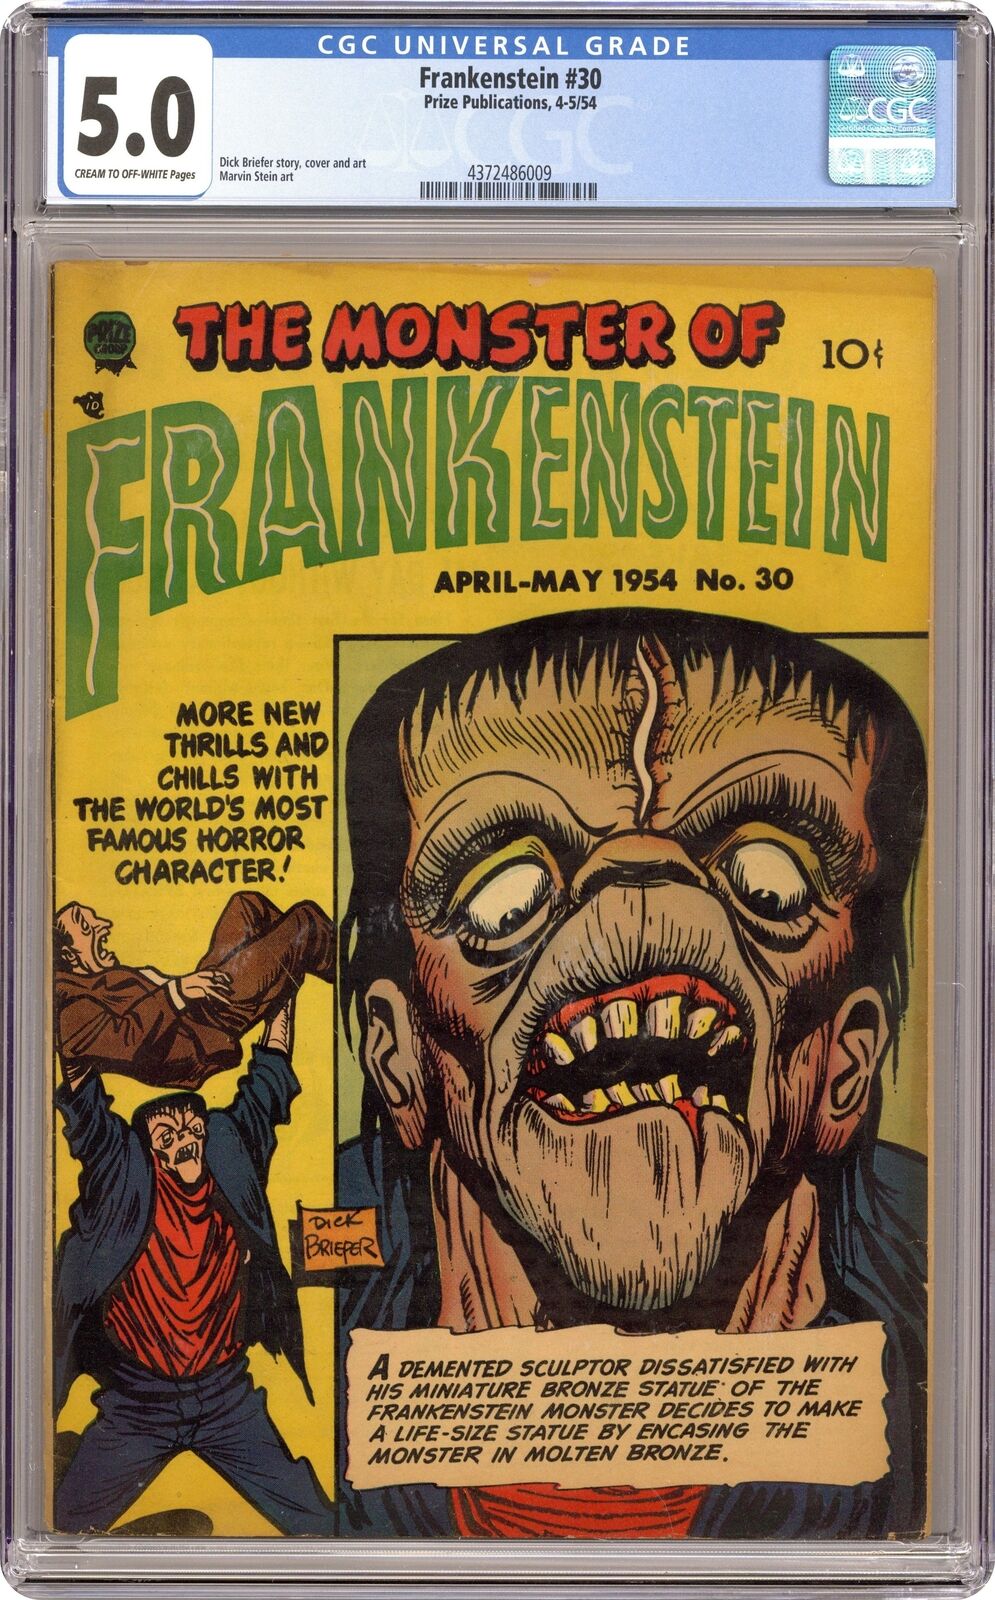 Frankenstein Comics #30 CGC 5.0 1954 4372486009